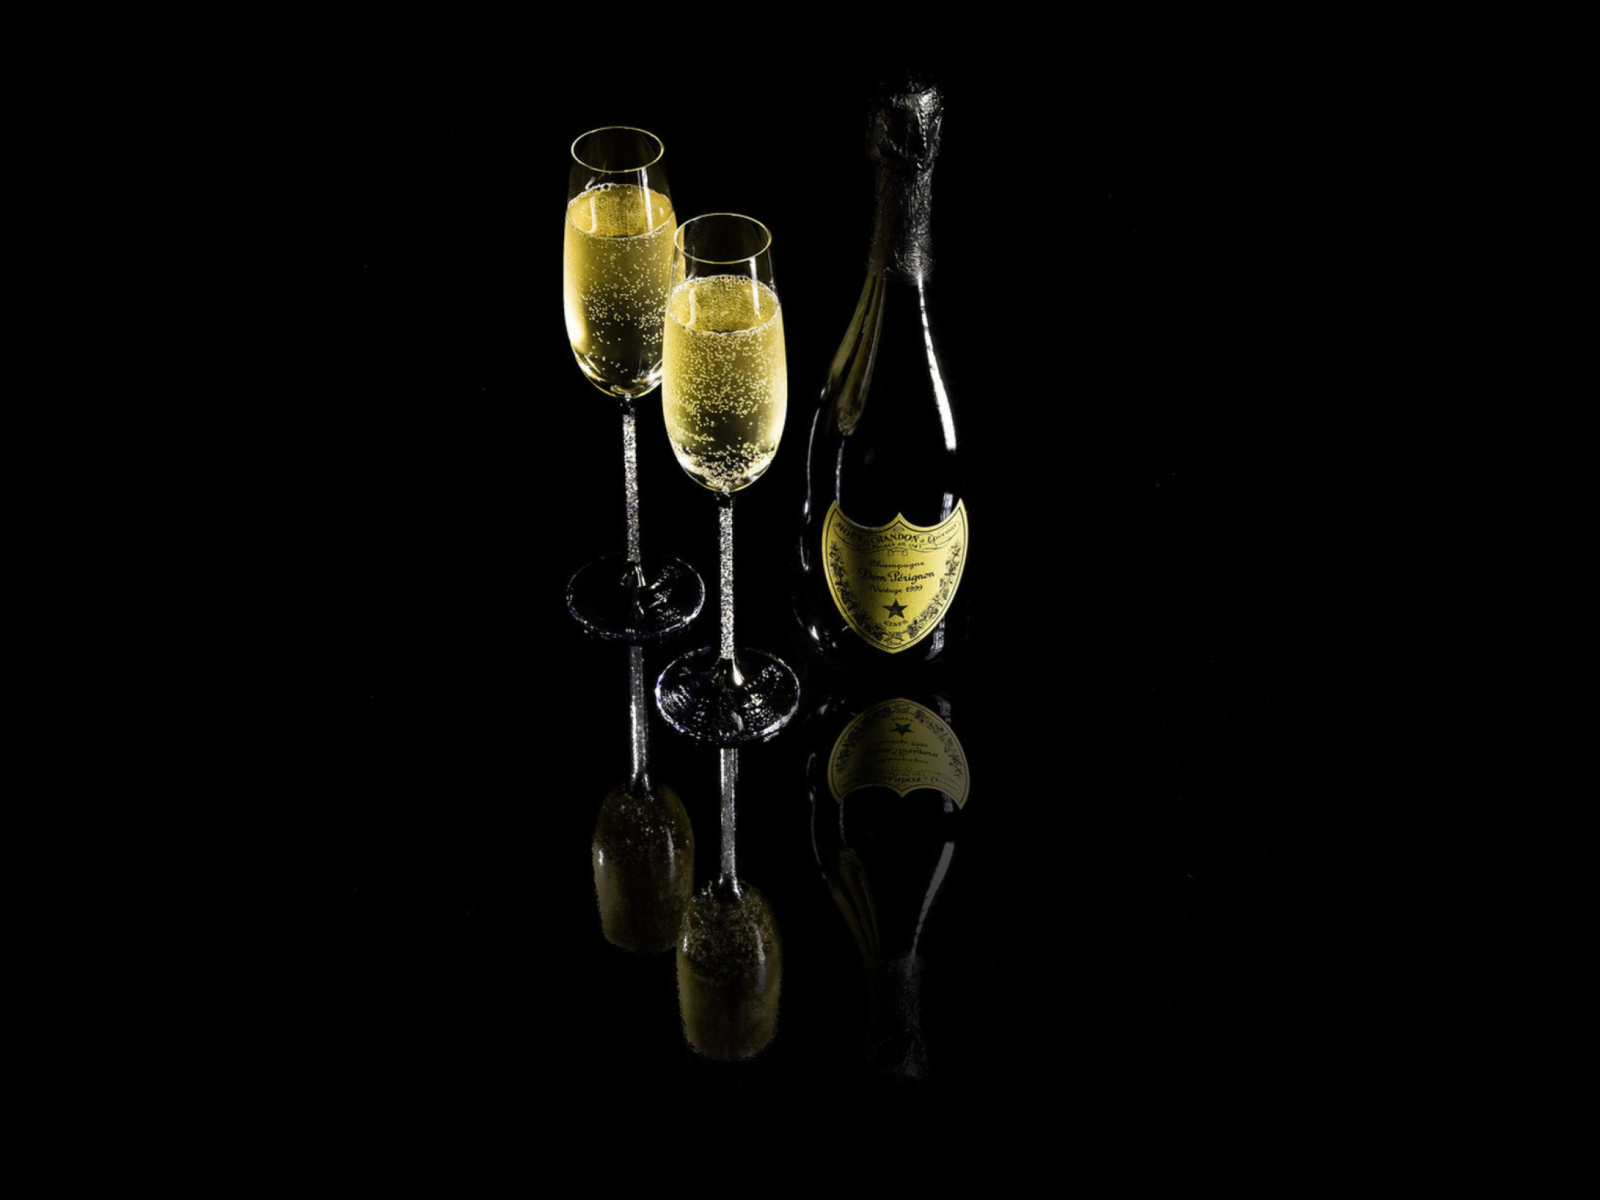 Sfondi Dom Perignon Champagne 1600x1200